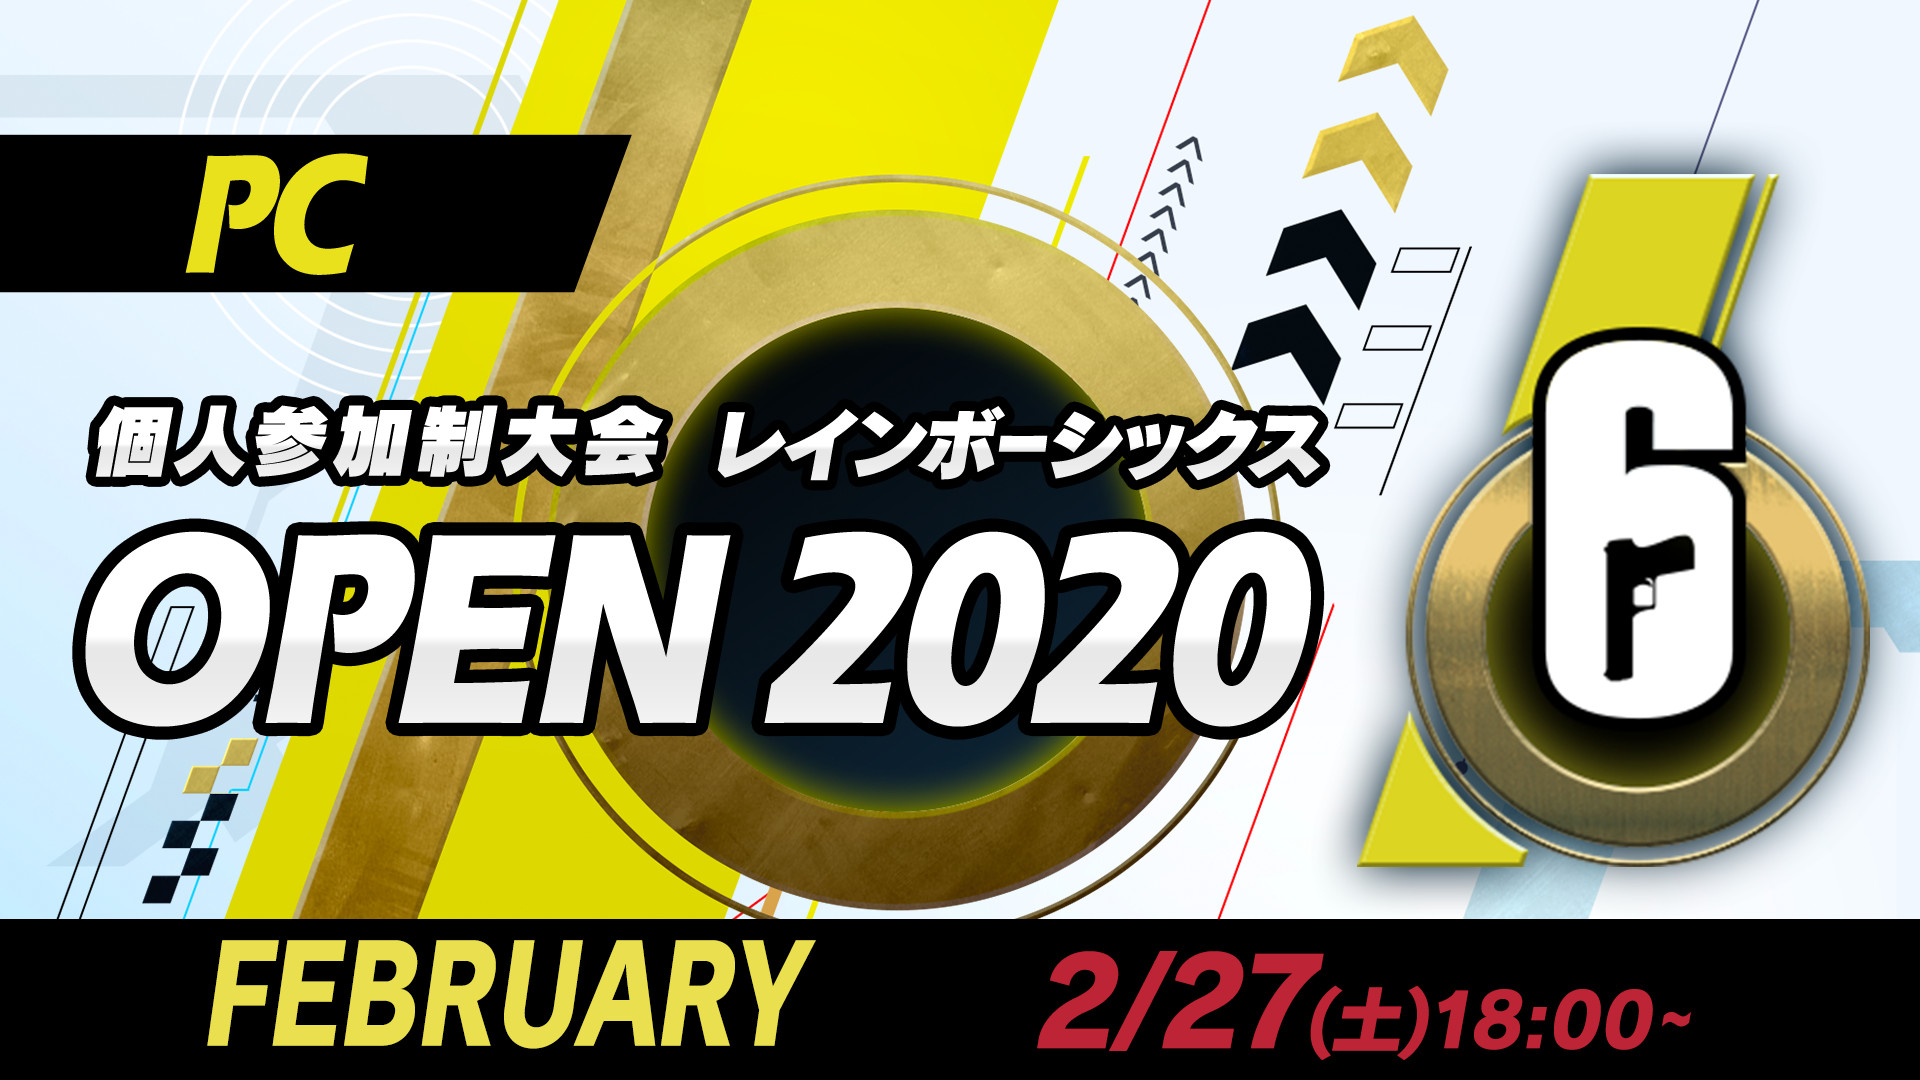 【大会情報】レインボーシックス PC OPEN  FEBURARY